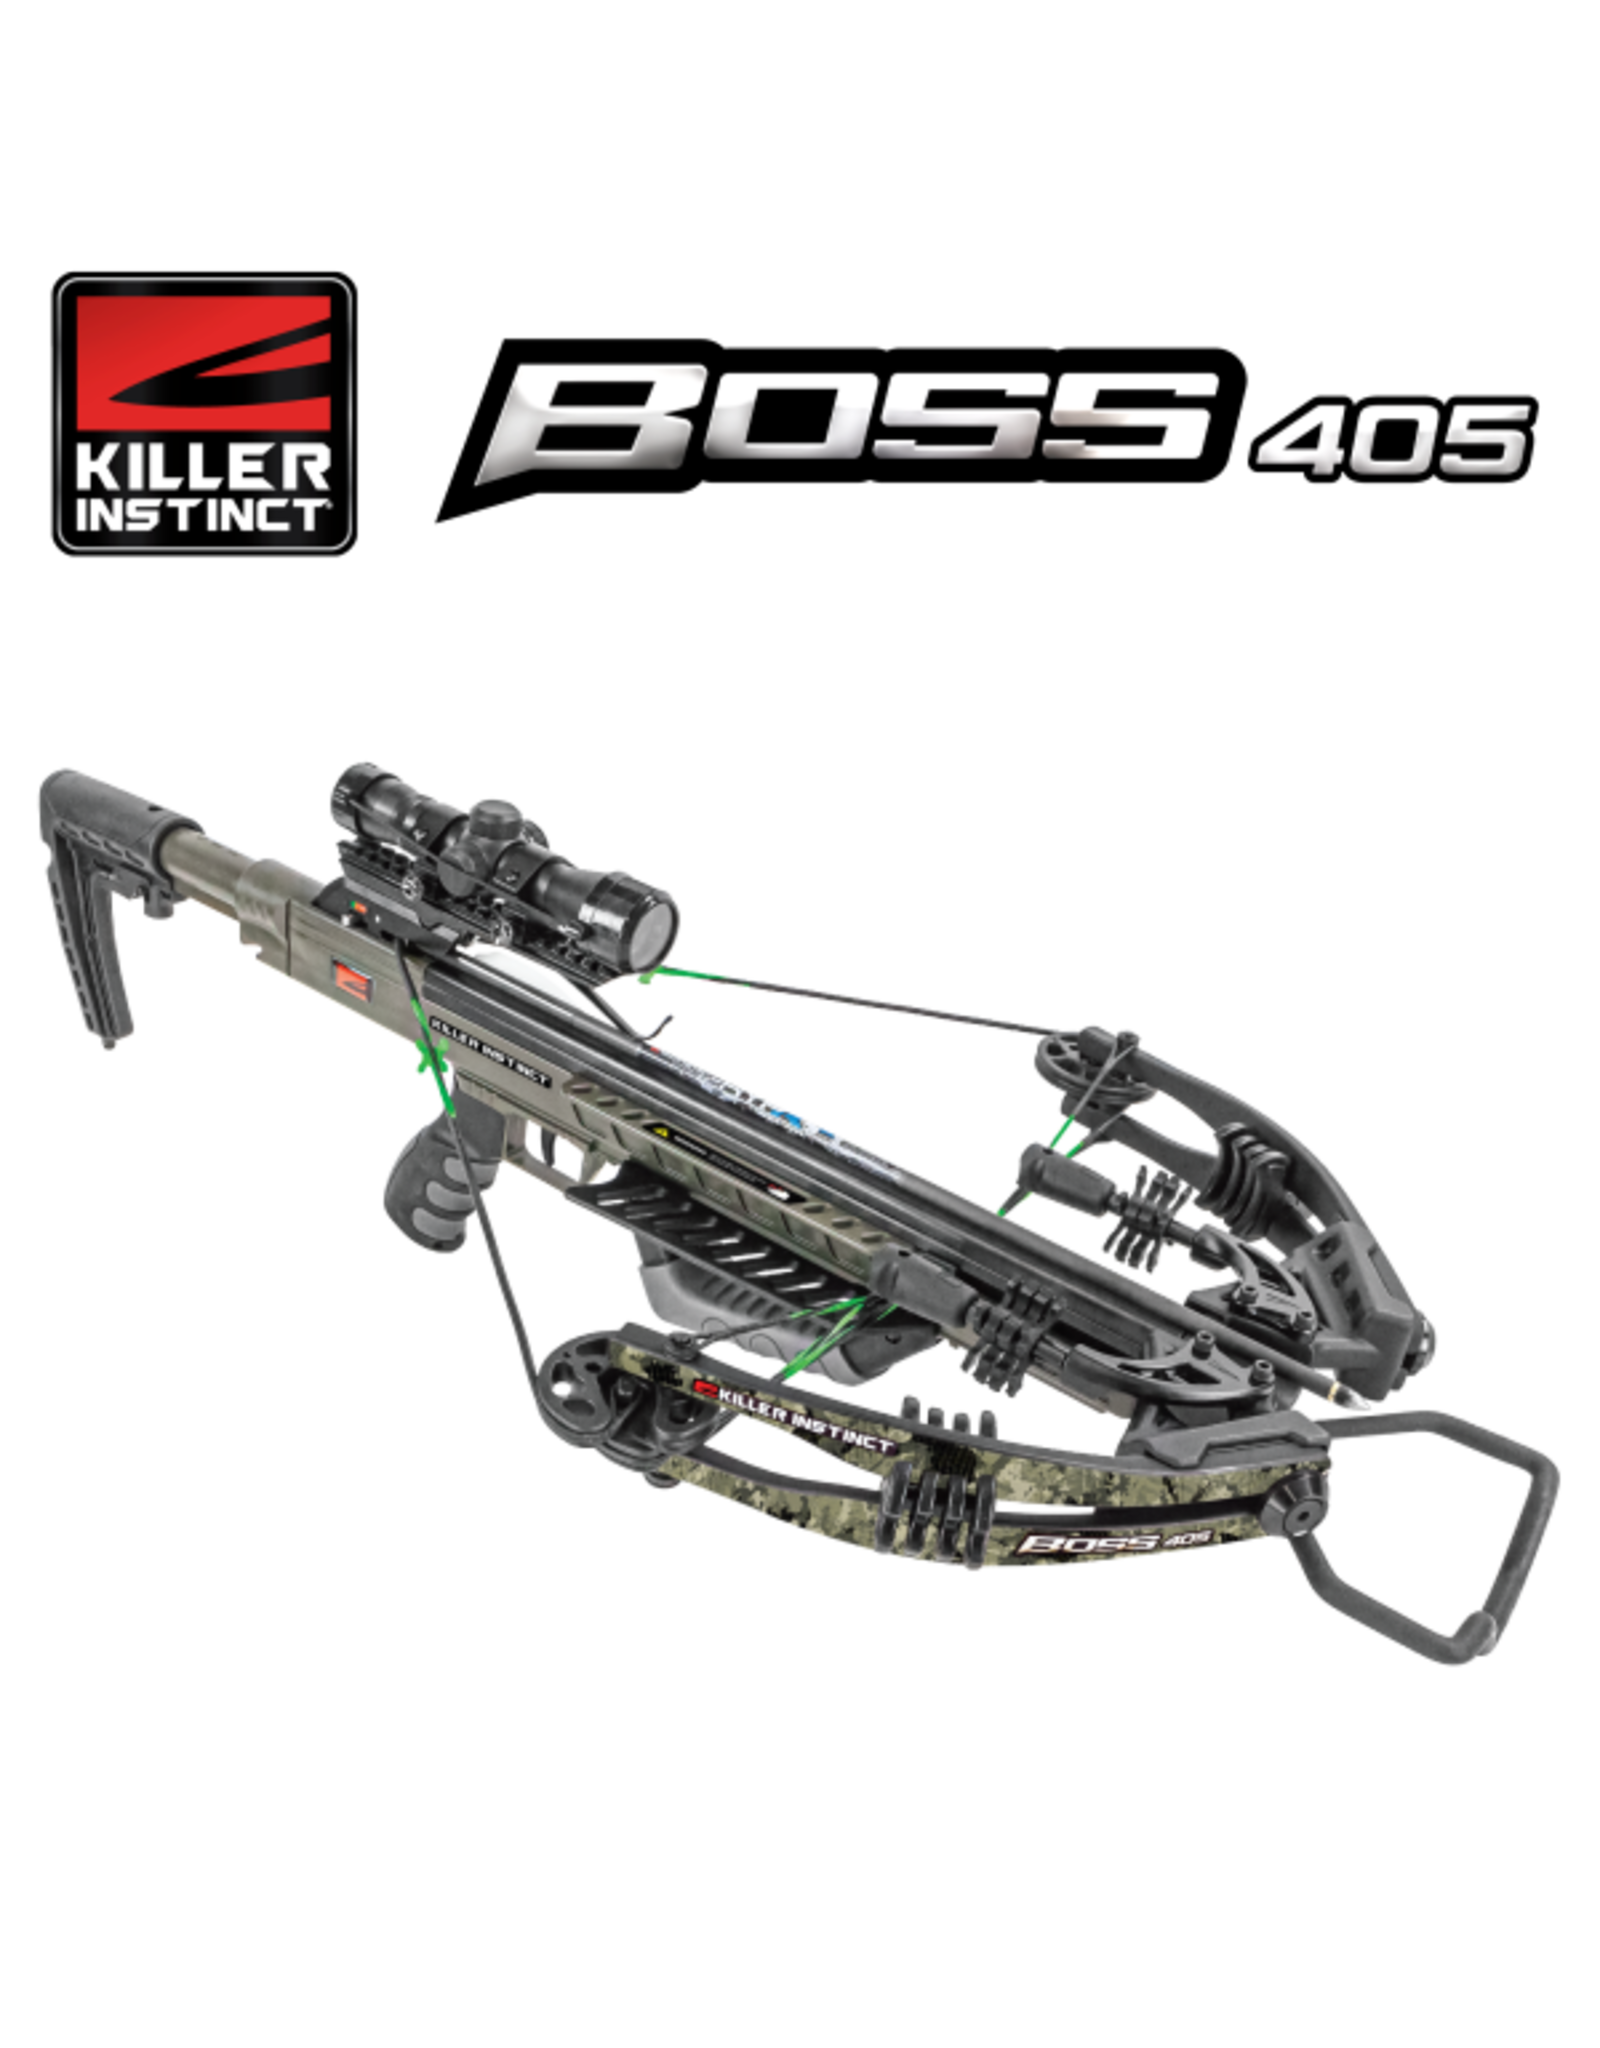 Killer Instinct Boss 405 Crossbow Package